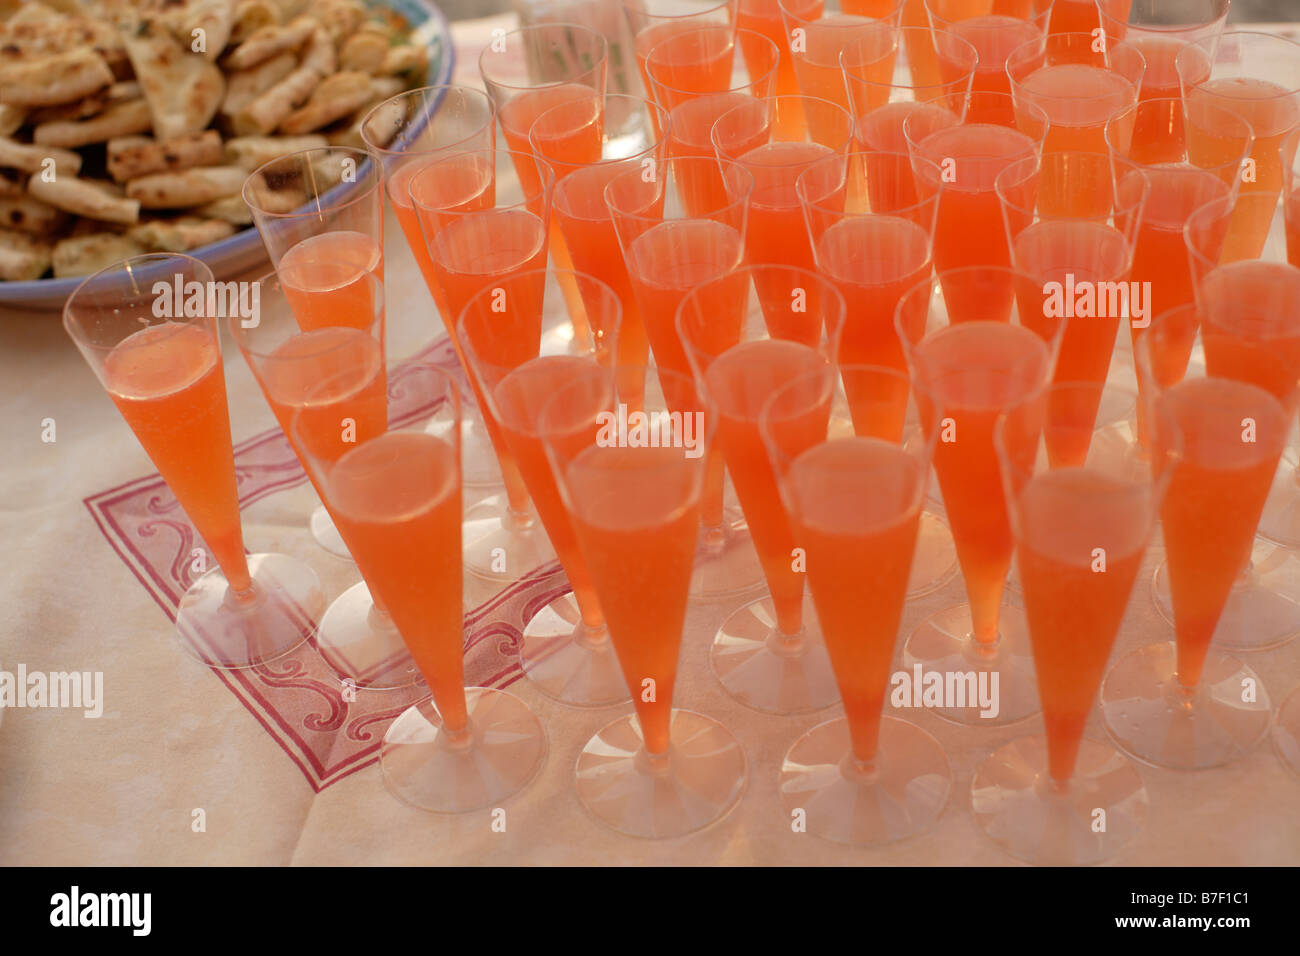 Des boissons dans des verres orange Banque D'Images